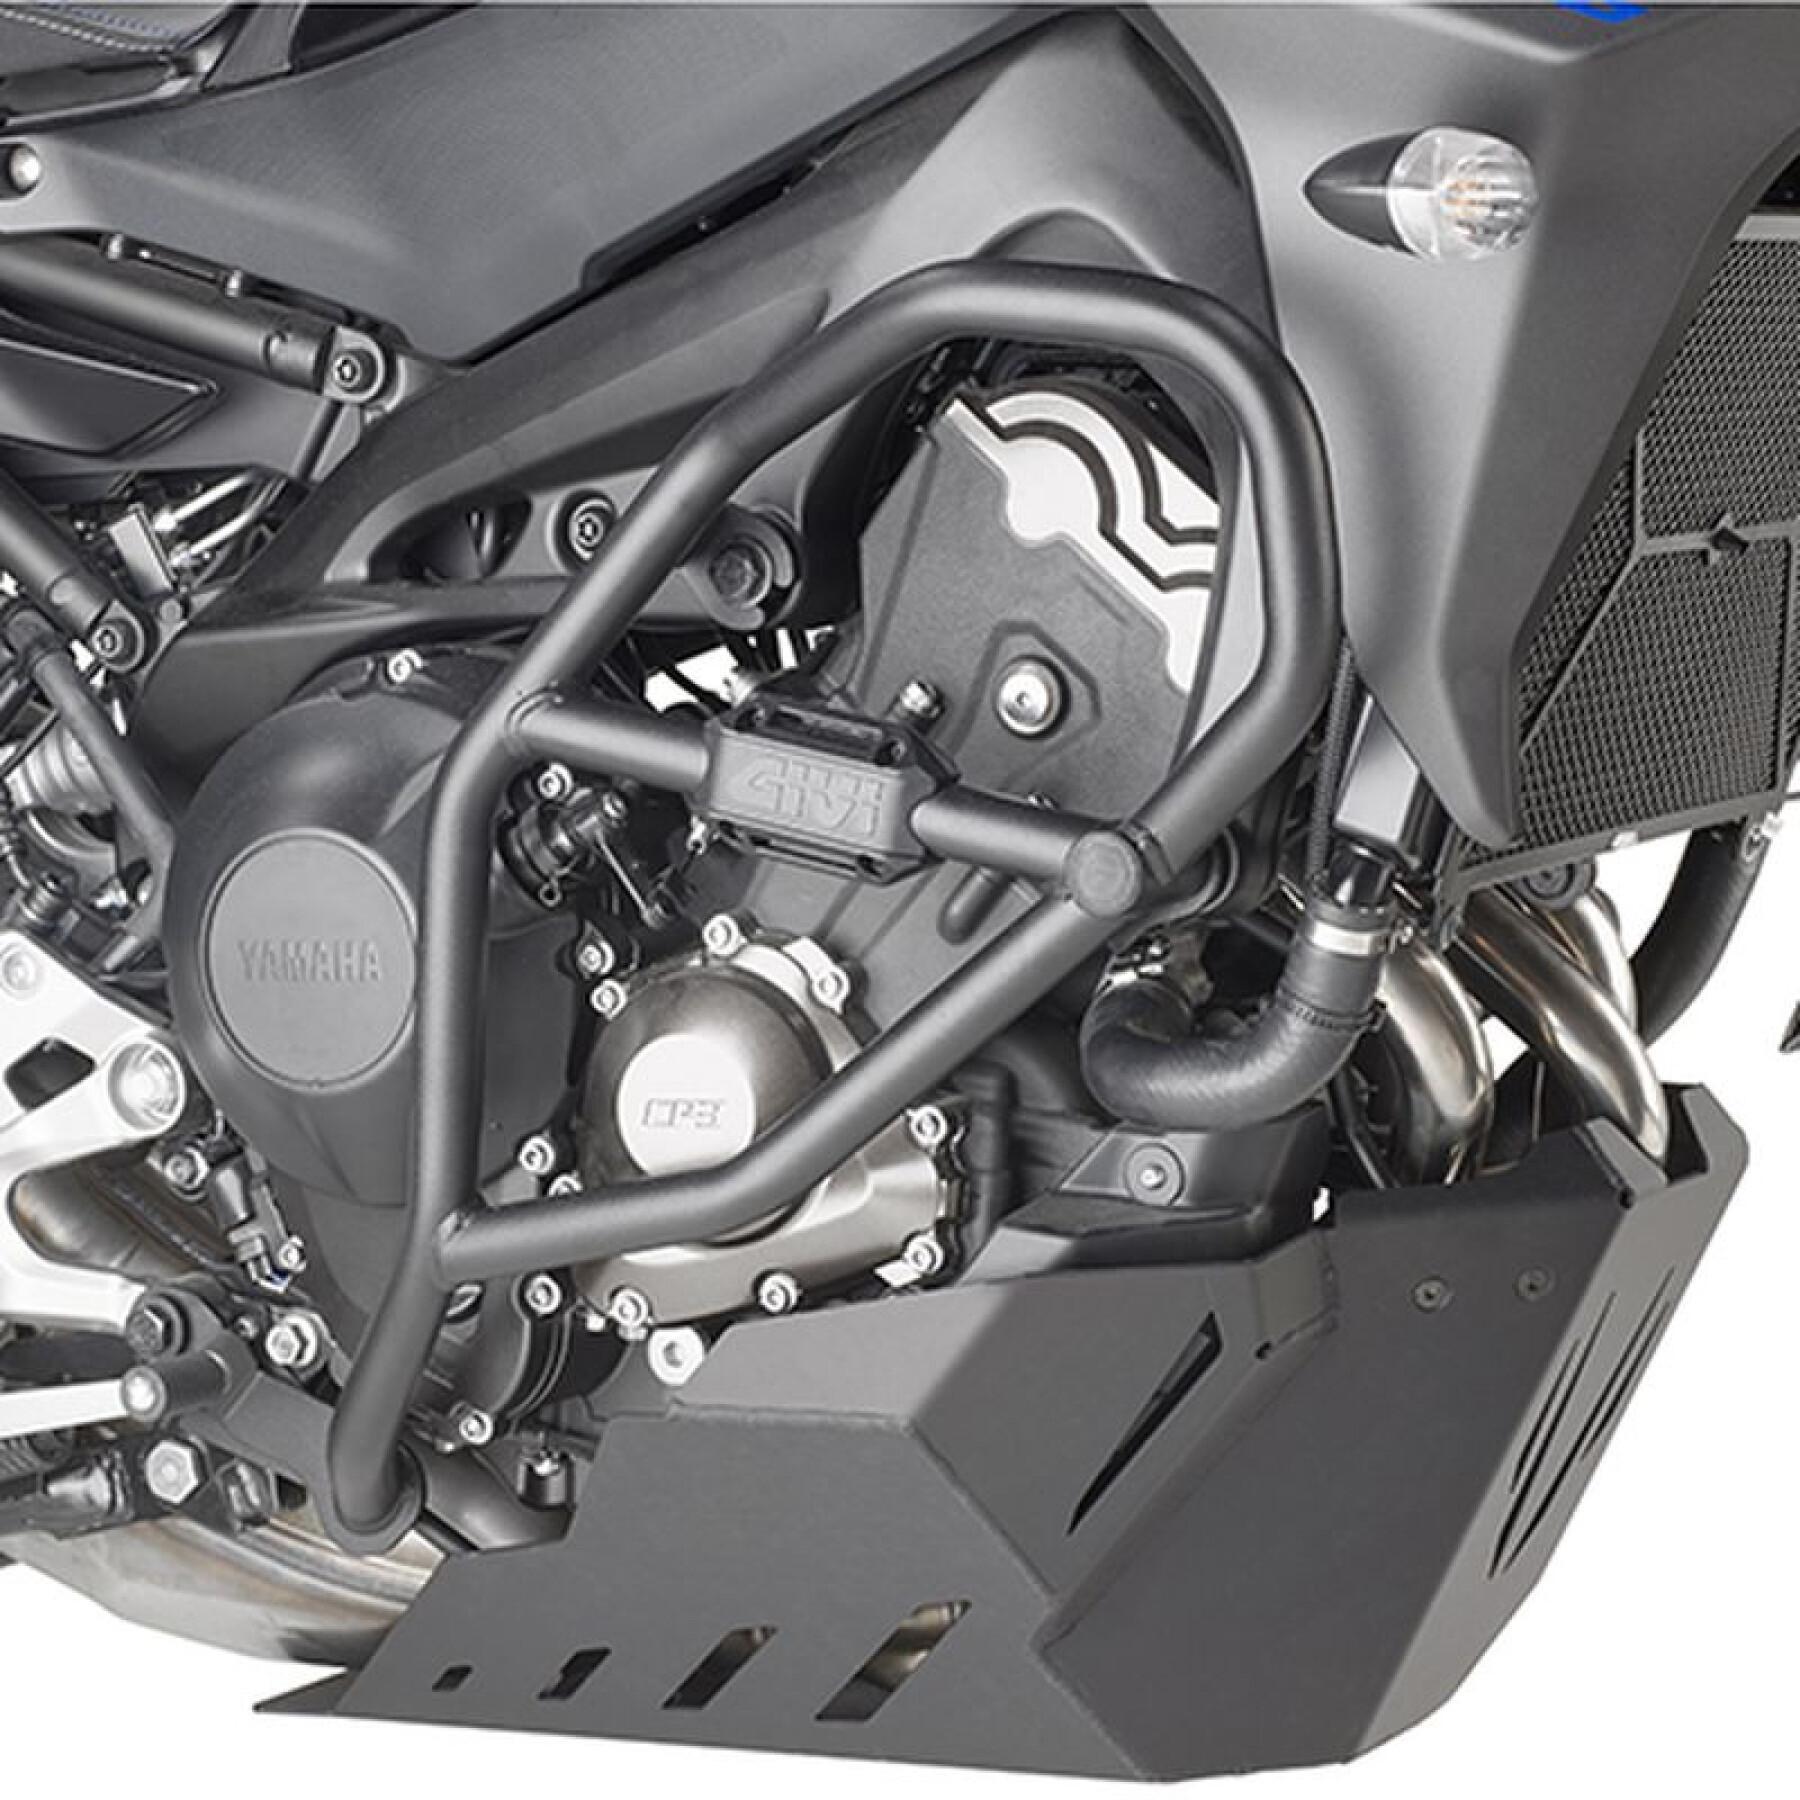 Motorrad-Standartenschutz Givi Yamaha Tracer 900/Tracer 900 Gt (18 à 19)